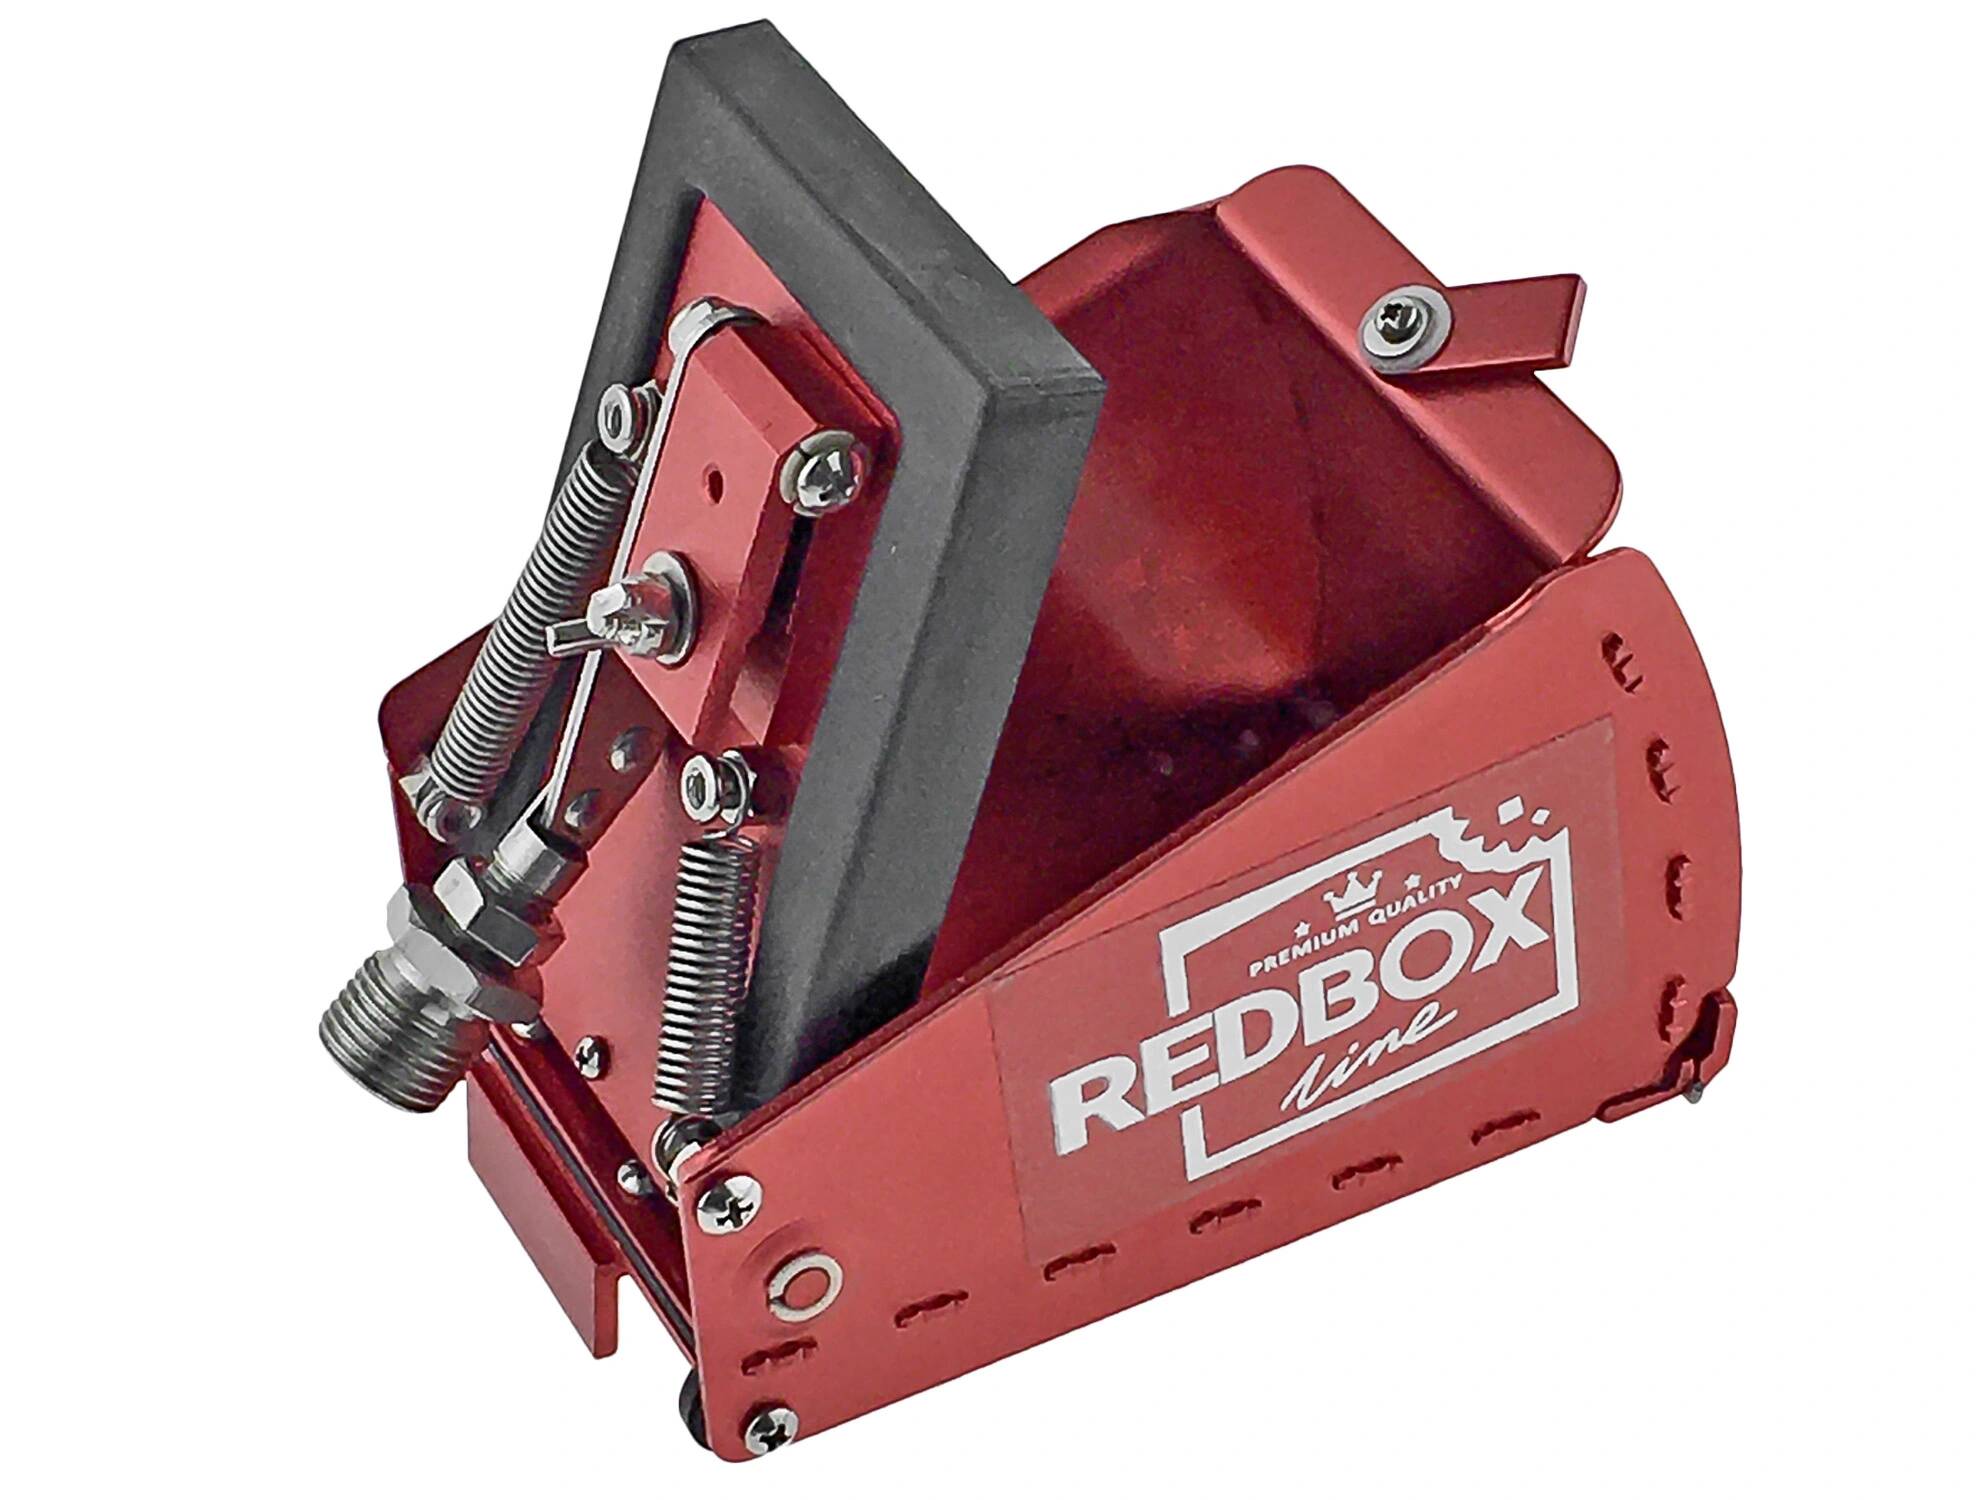 RedBox Skrzynka 8 cm śrub wkrętów do 5 zakrywania i Skrzynki RedBox level 